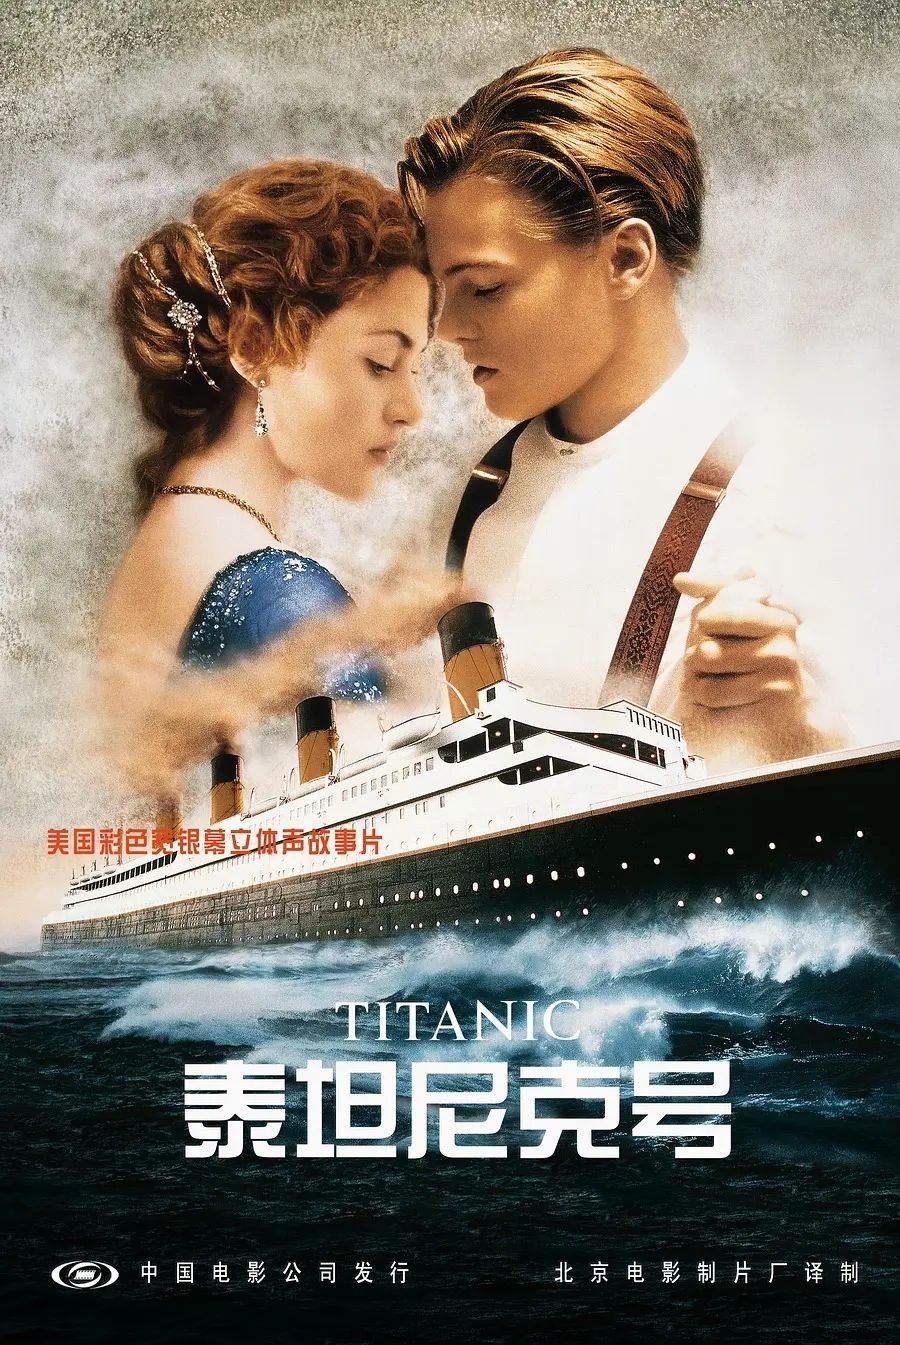 泰坦尼克号1电影剧情详解「详细介绍」
